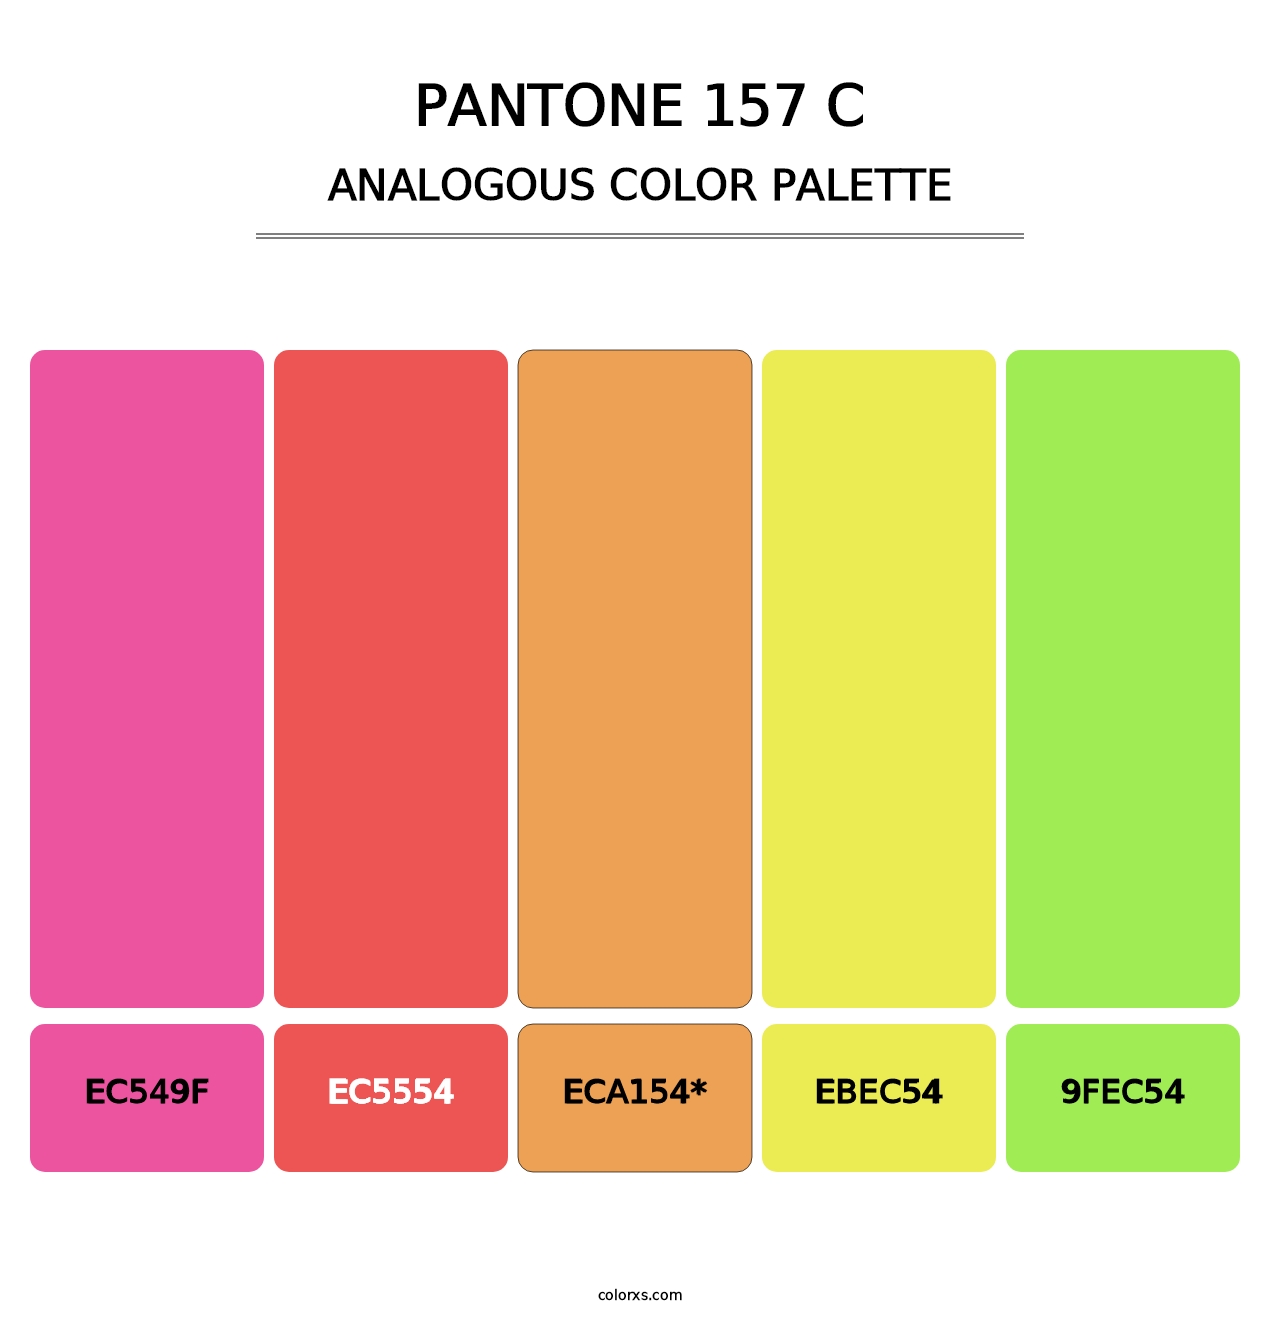 PANTONE 157 C - Analogous Color Palette